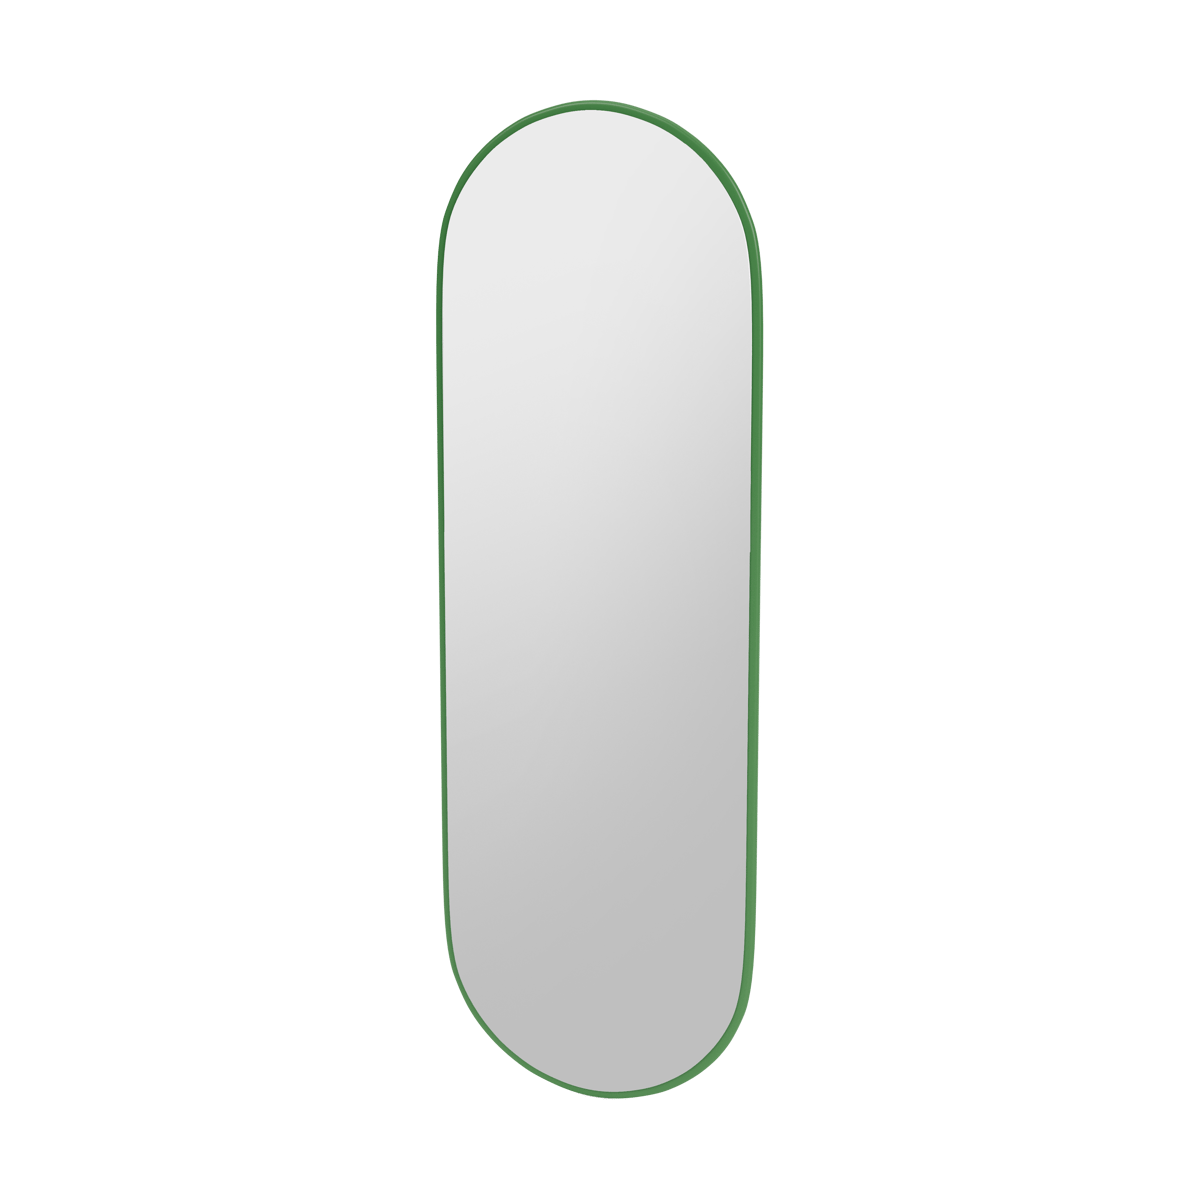 Montana FIGUUR Mirror Spiegel - SP824R Parsley